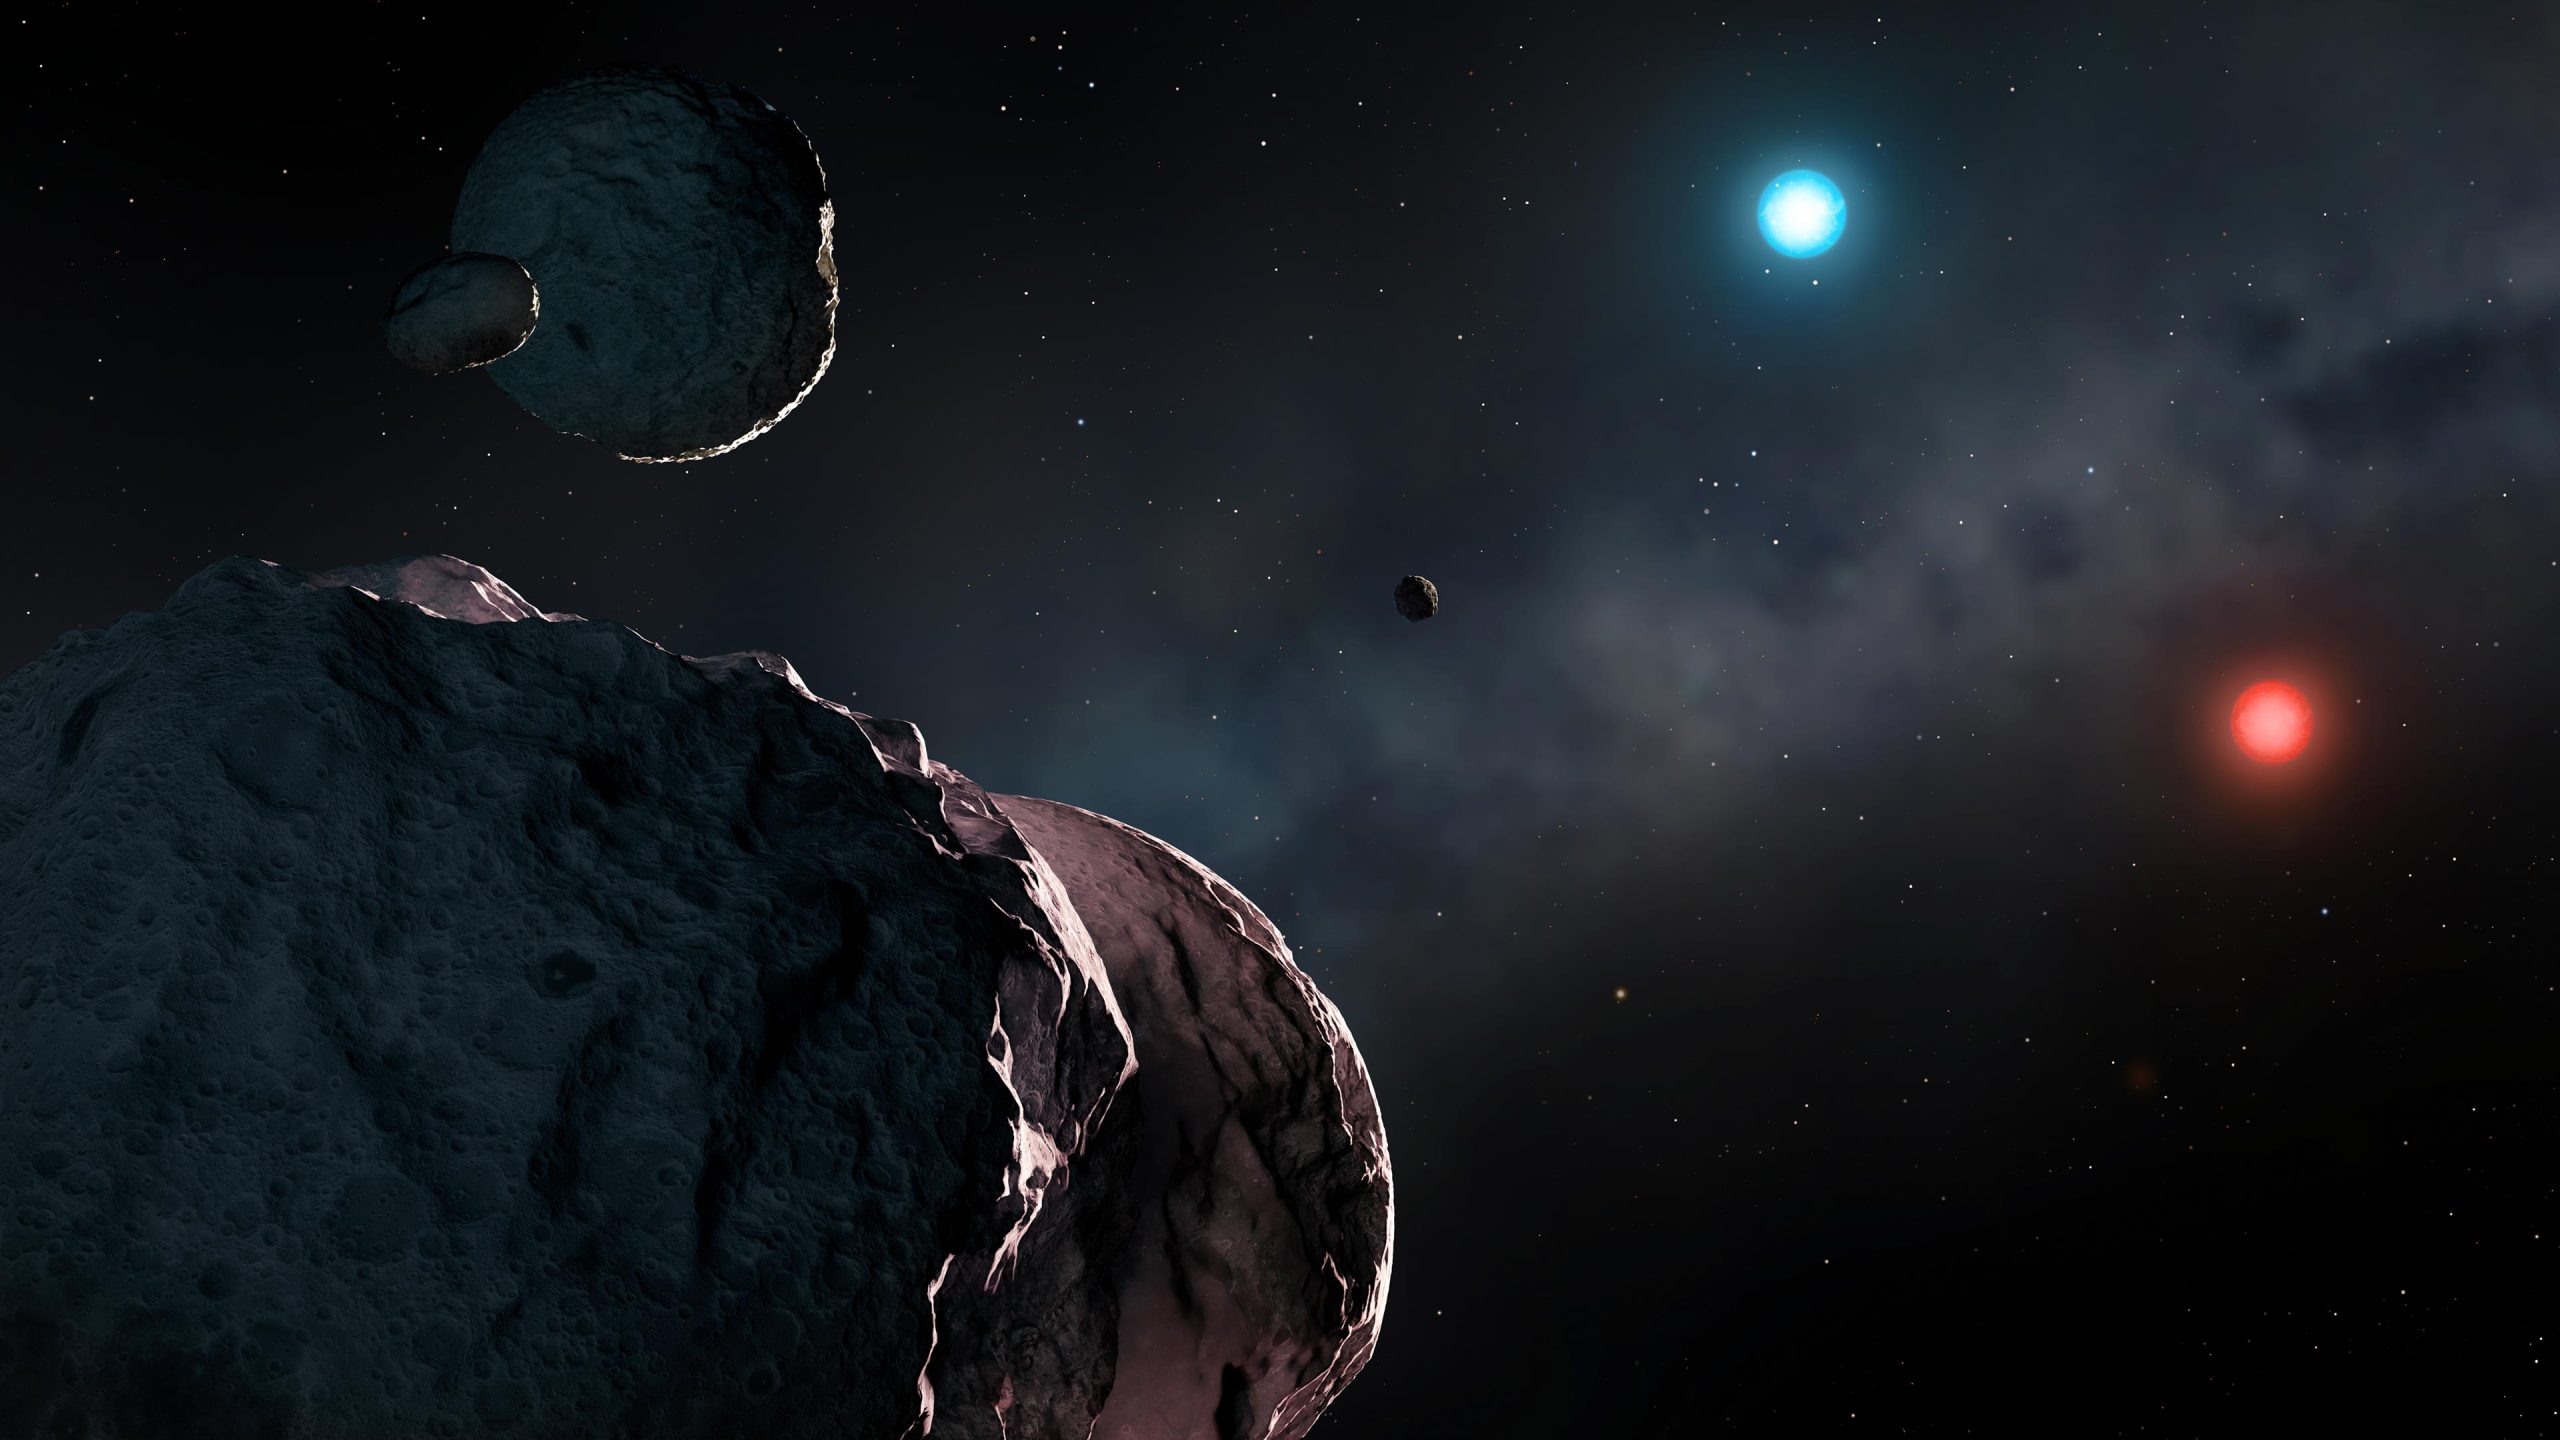 Astronomen haben die ältesten Planetentrümmer in unserer Galaxie entdeckt – die Überreste des zerstörten Sonnensystems